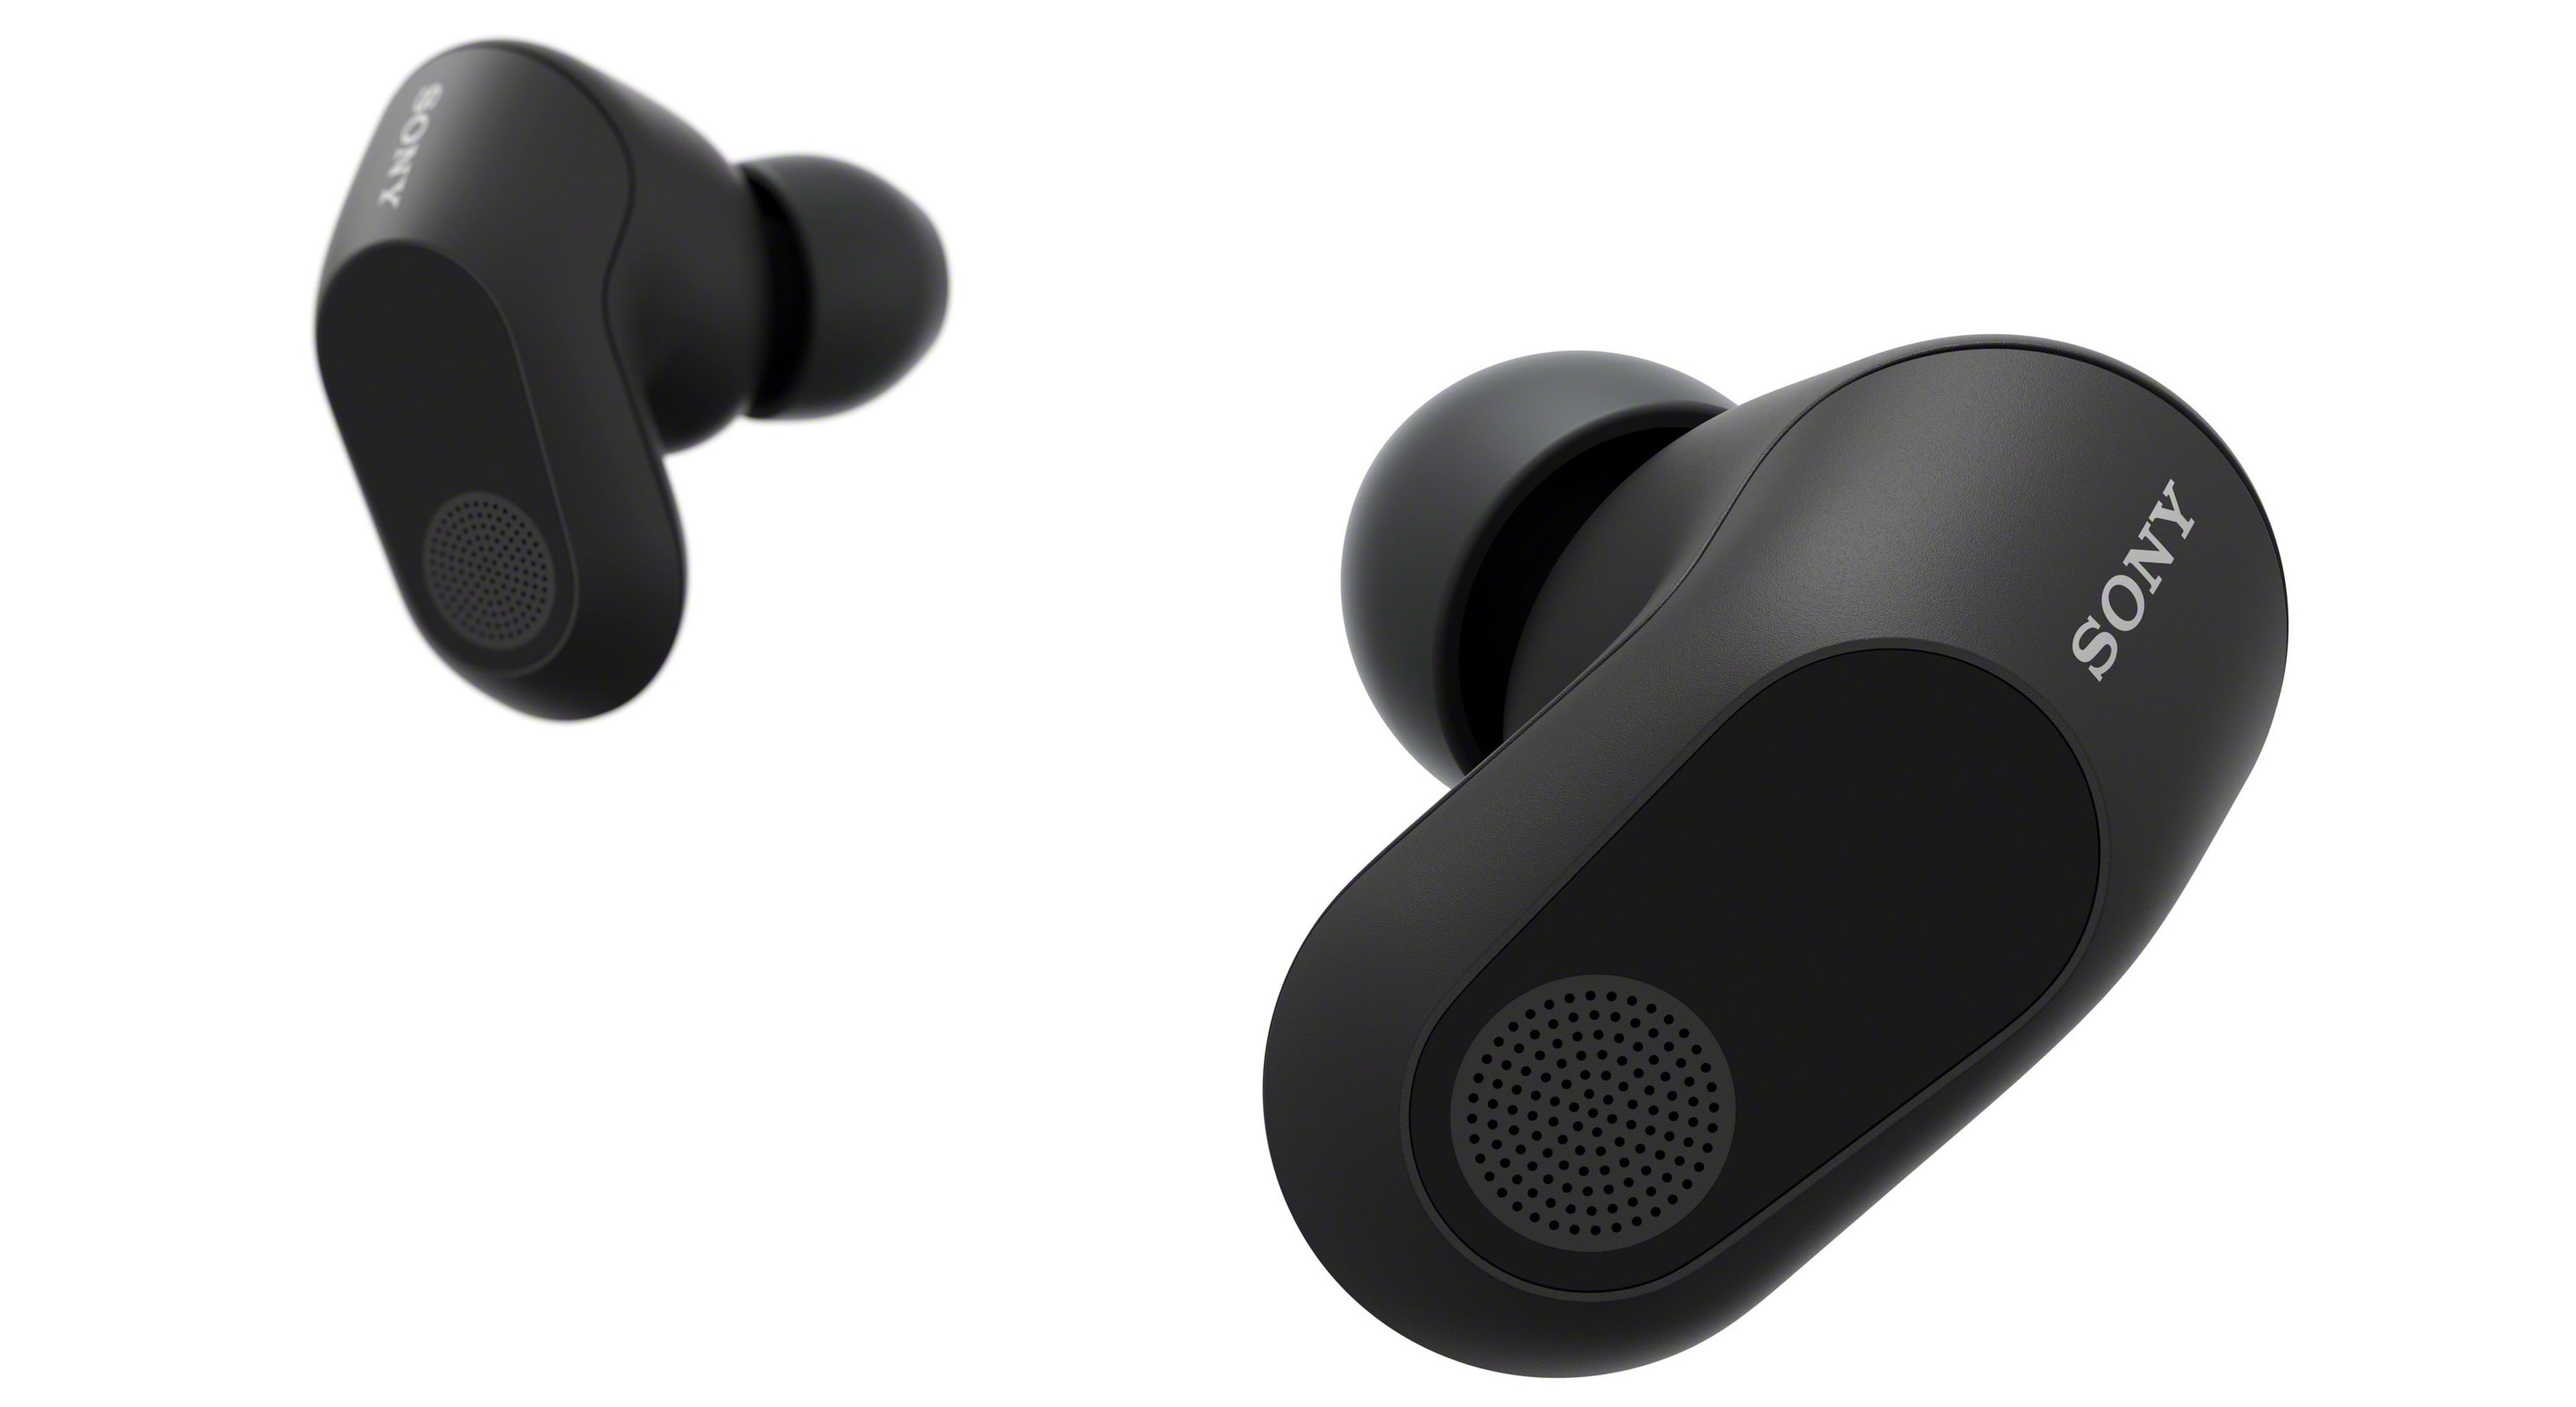 Motivos para comprar los nuevos auriculares Sony Inzone H9 para PS5 y PC